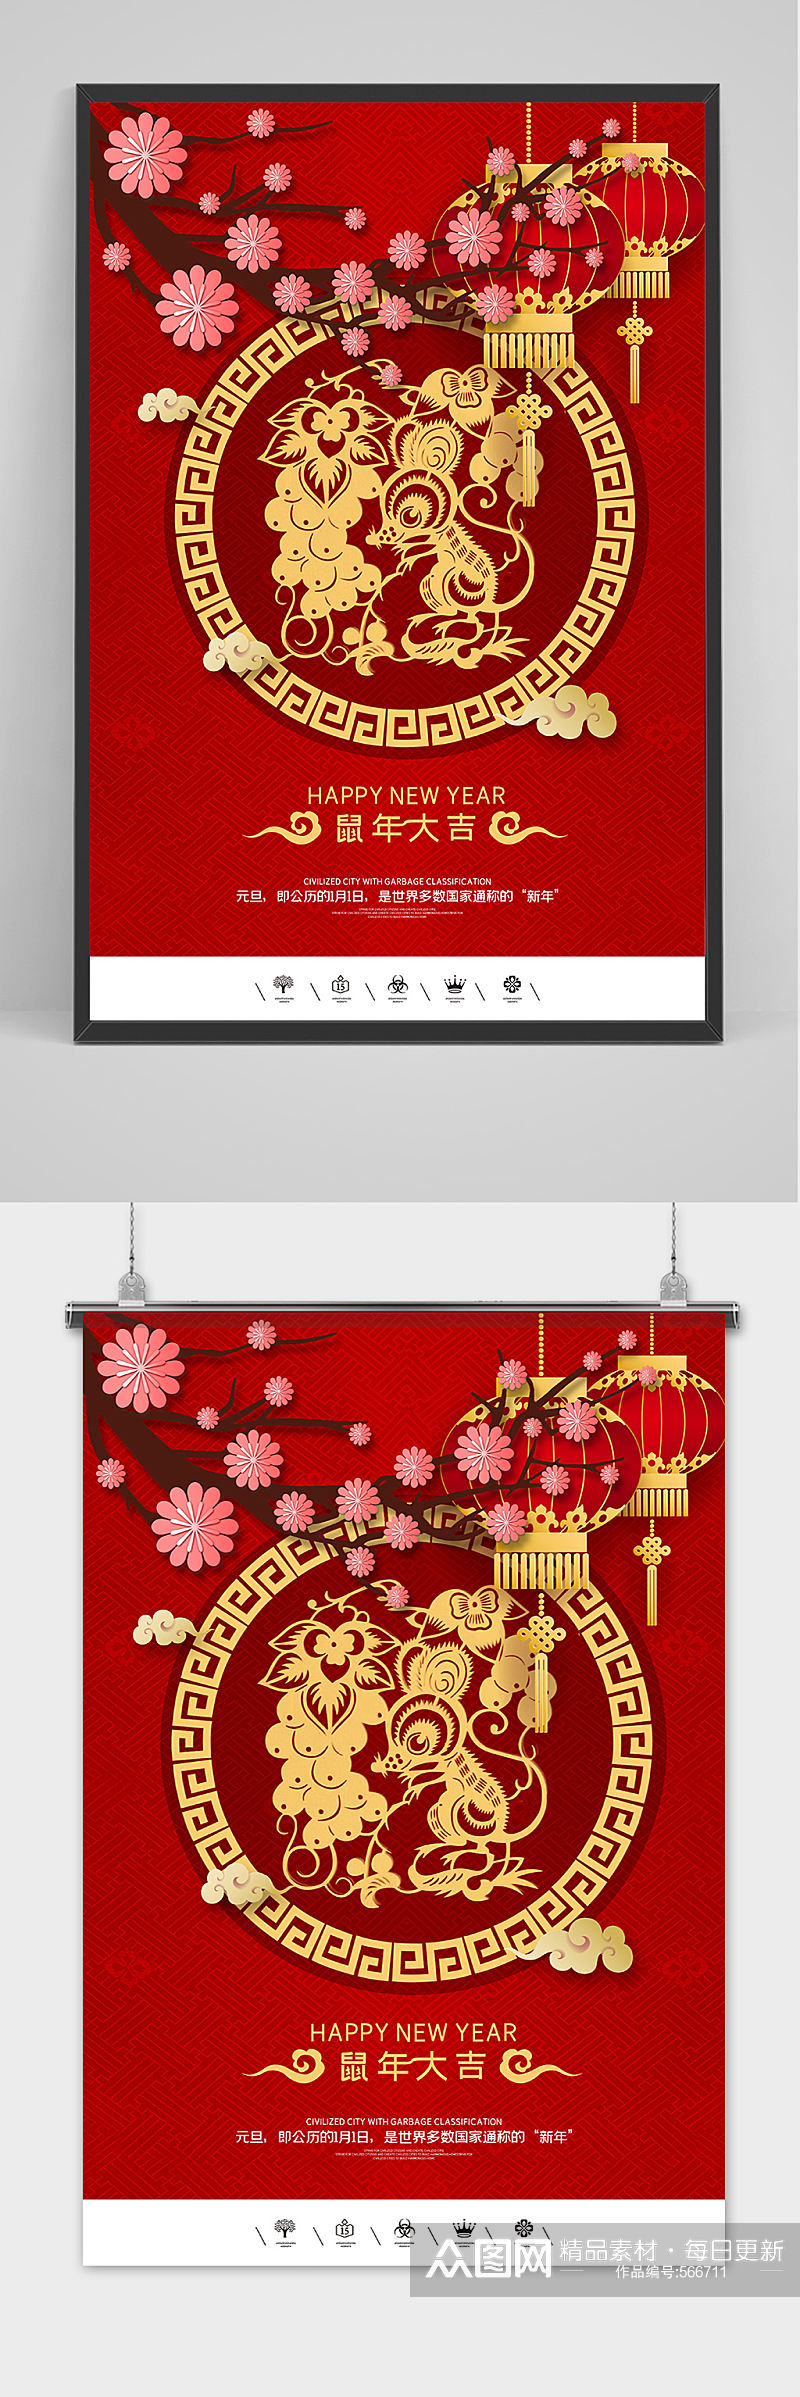 剪纸中国风鼠年元旦节海报素材